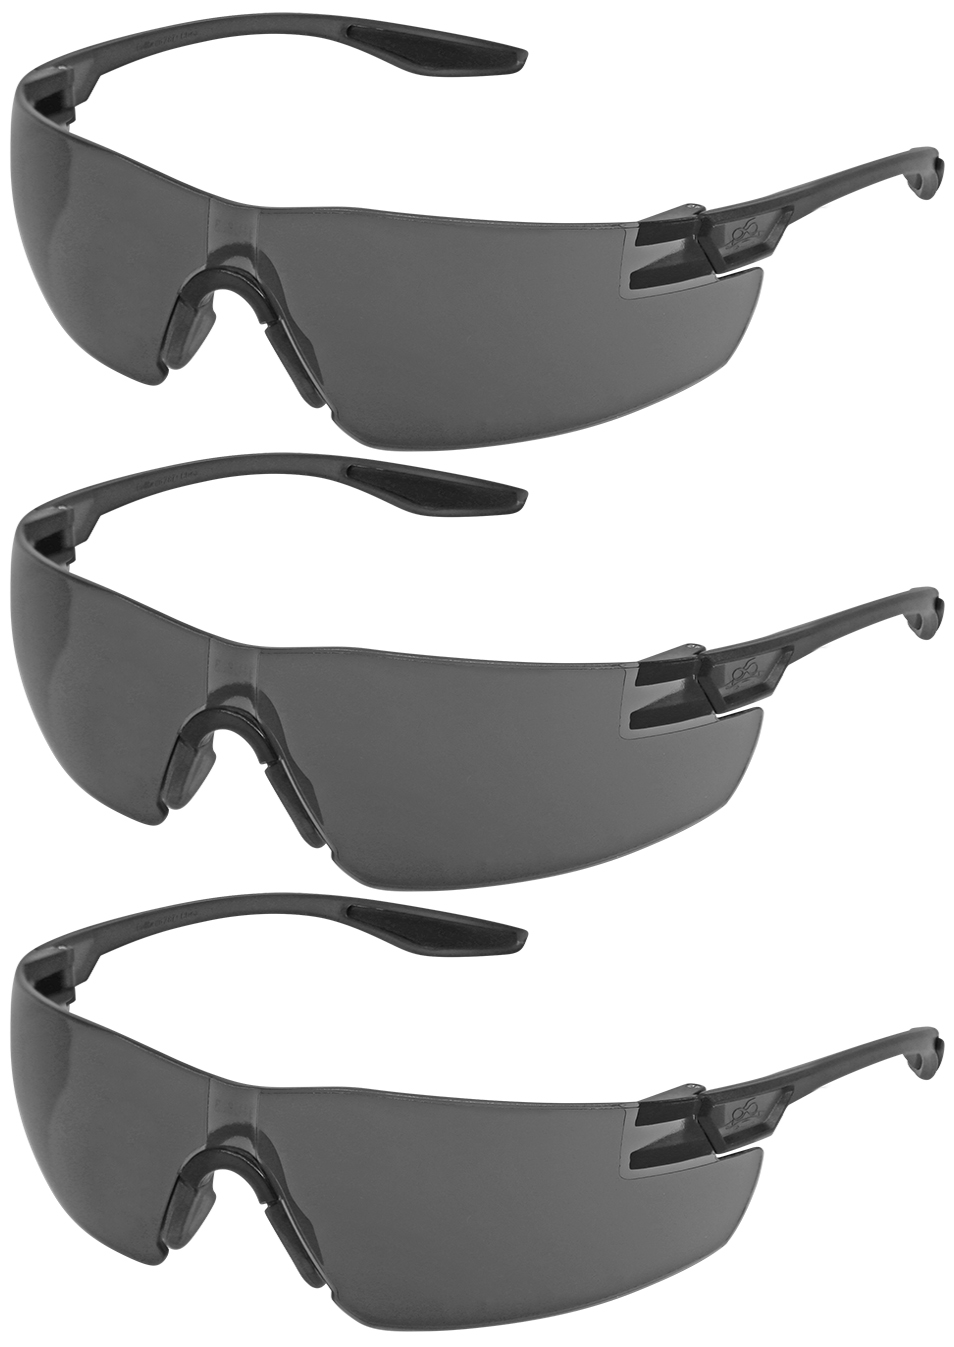 Schutzbrille Arbeitsbrille Modell 460 farblos PC 2mm antifog 